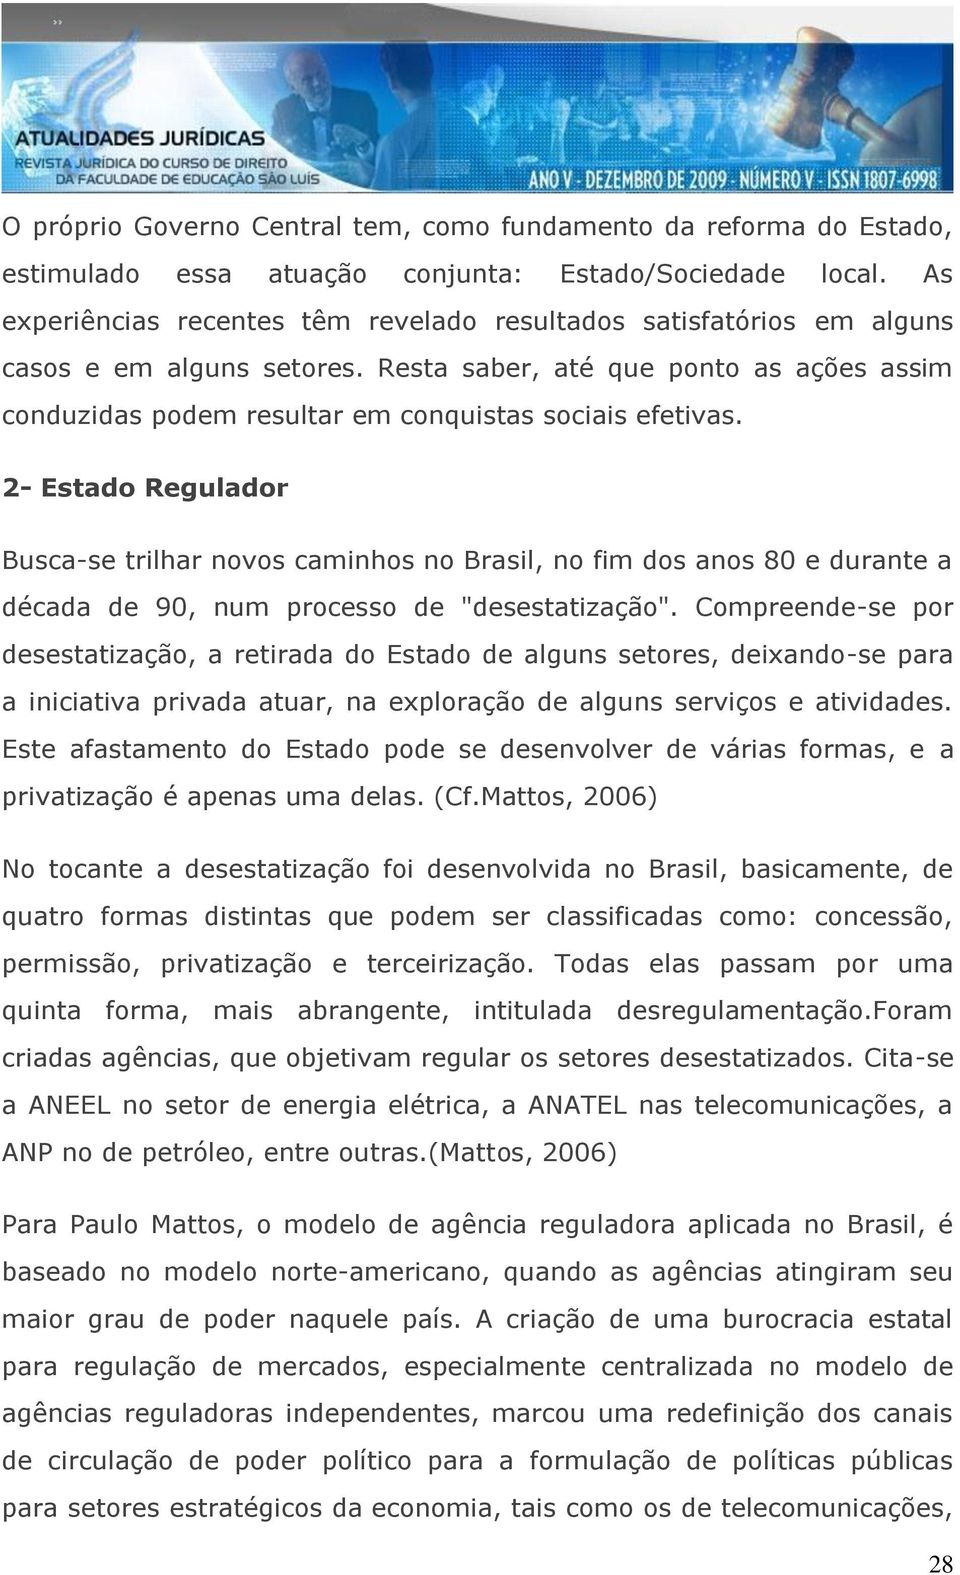 2- Estado Regulador Busca-se trilhar novos caminhos no Brasil, no fim dos anos 80 e durante a década de 90, num processo de "desestatização".